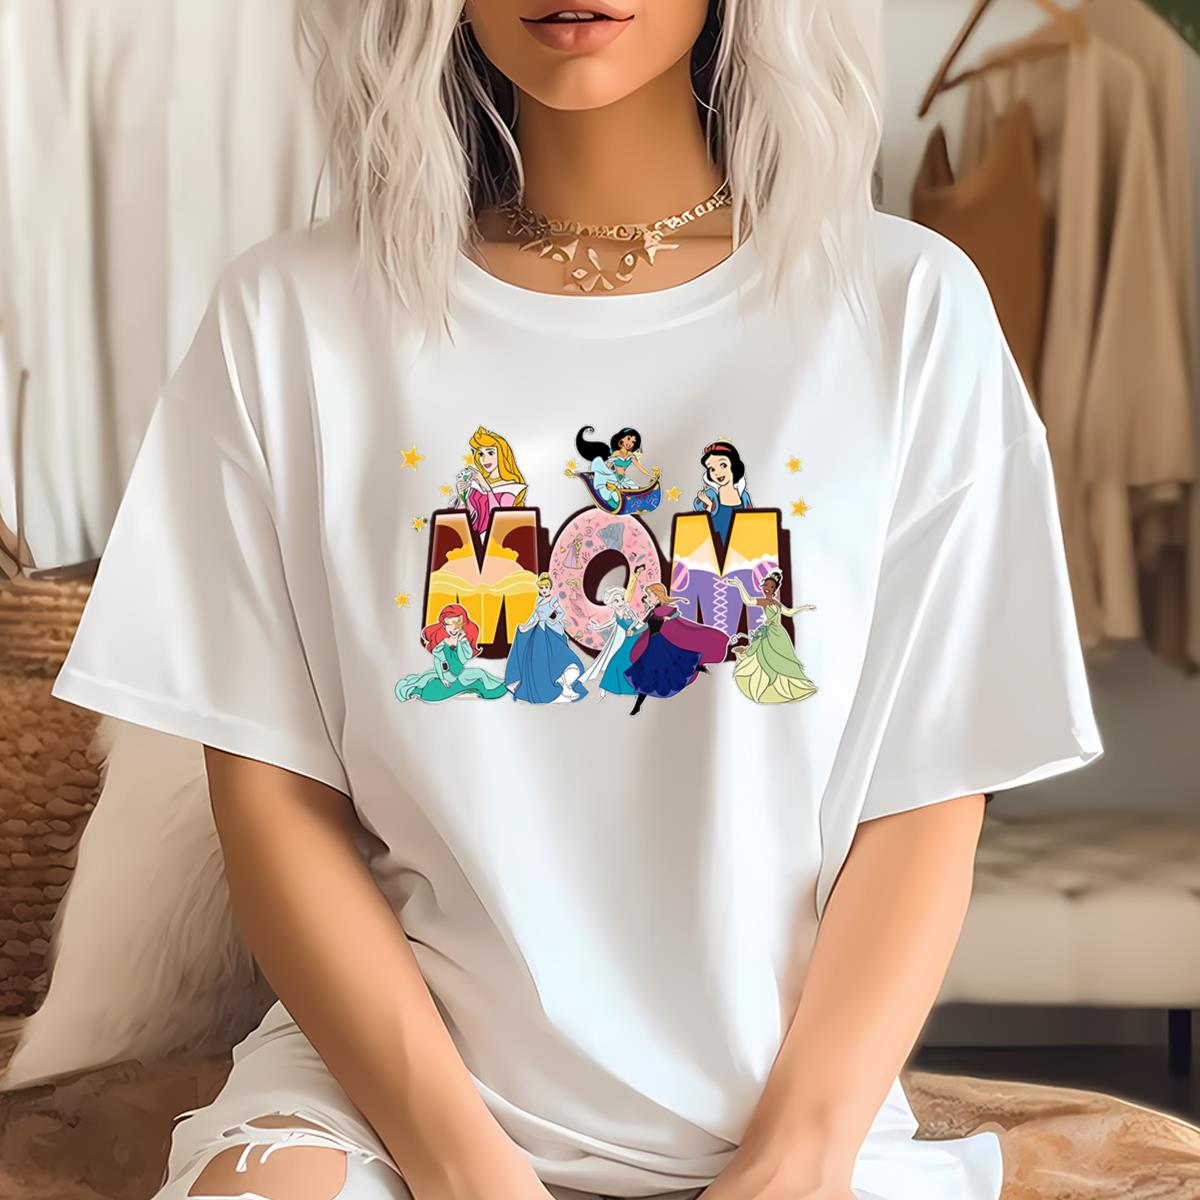 Disney Princess T Shirt, Disney Shirt For Mom